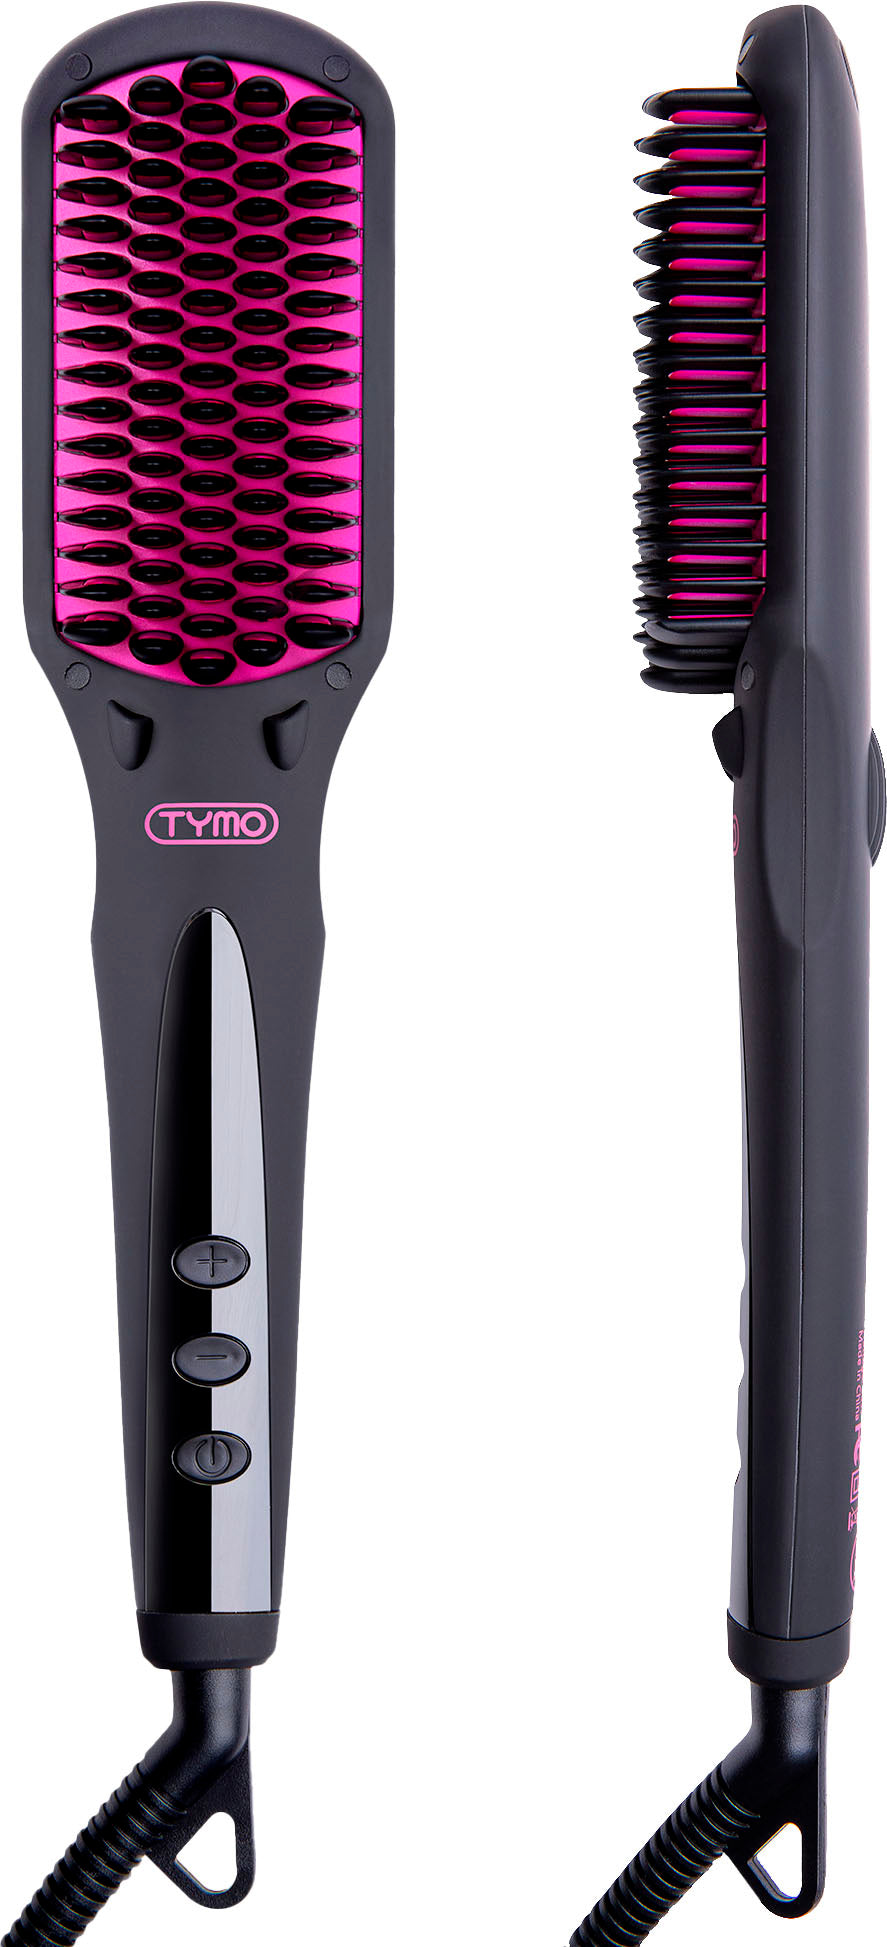 TYMO Ionic Hair Straightening Brush - Black_0